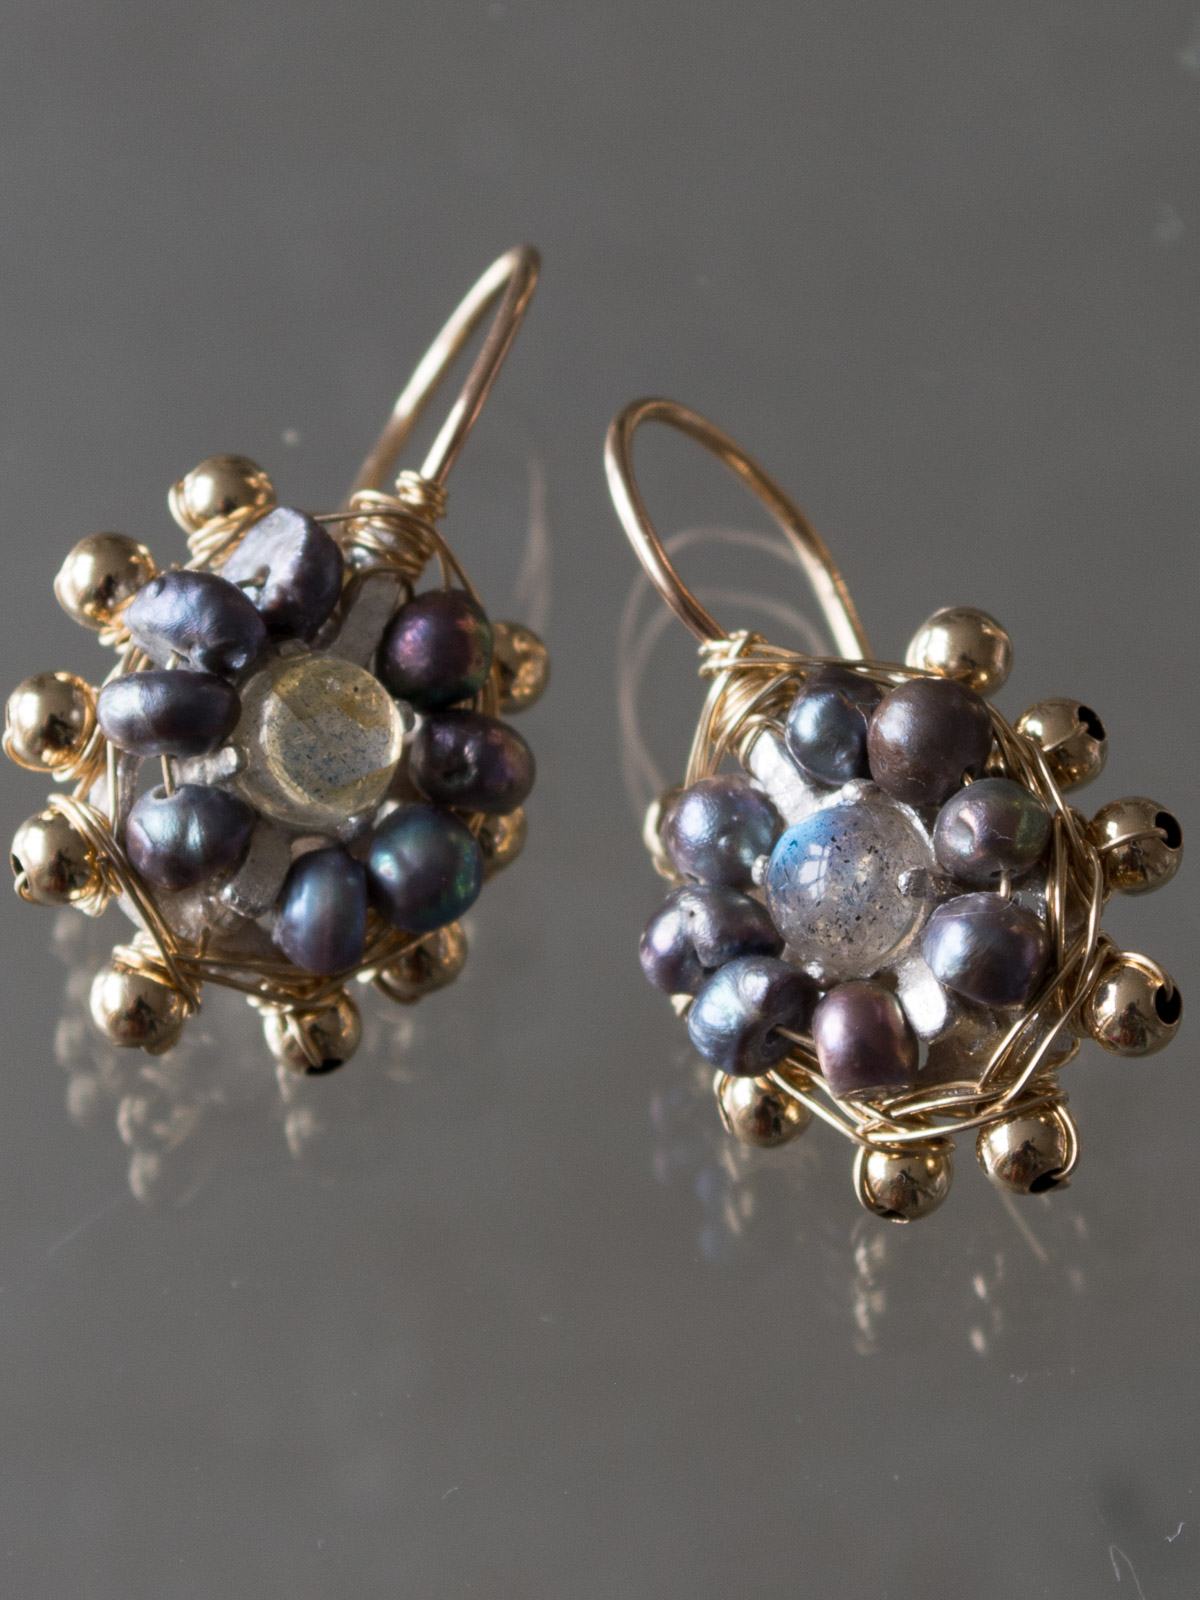 earrings Small Mandala dark pearls, labradorite